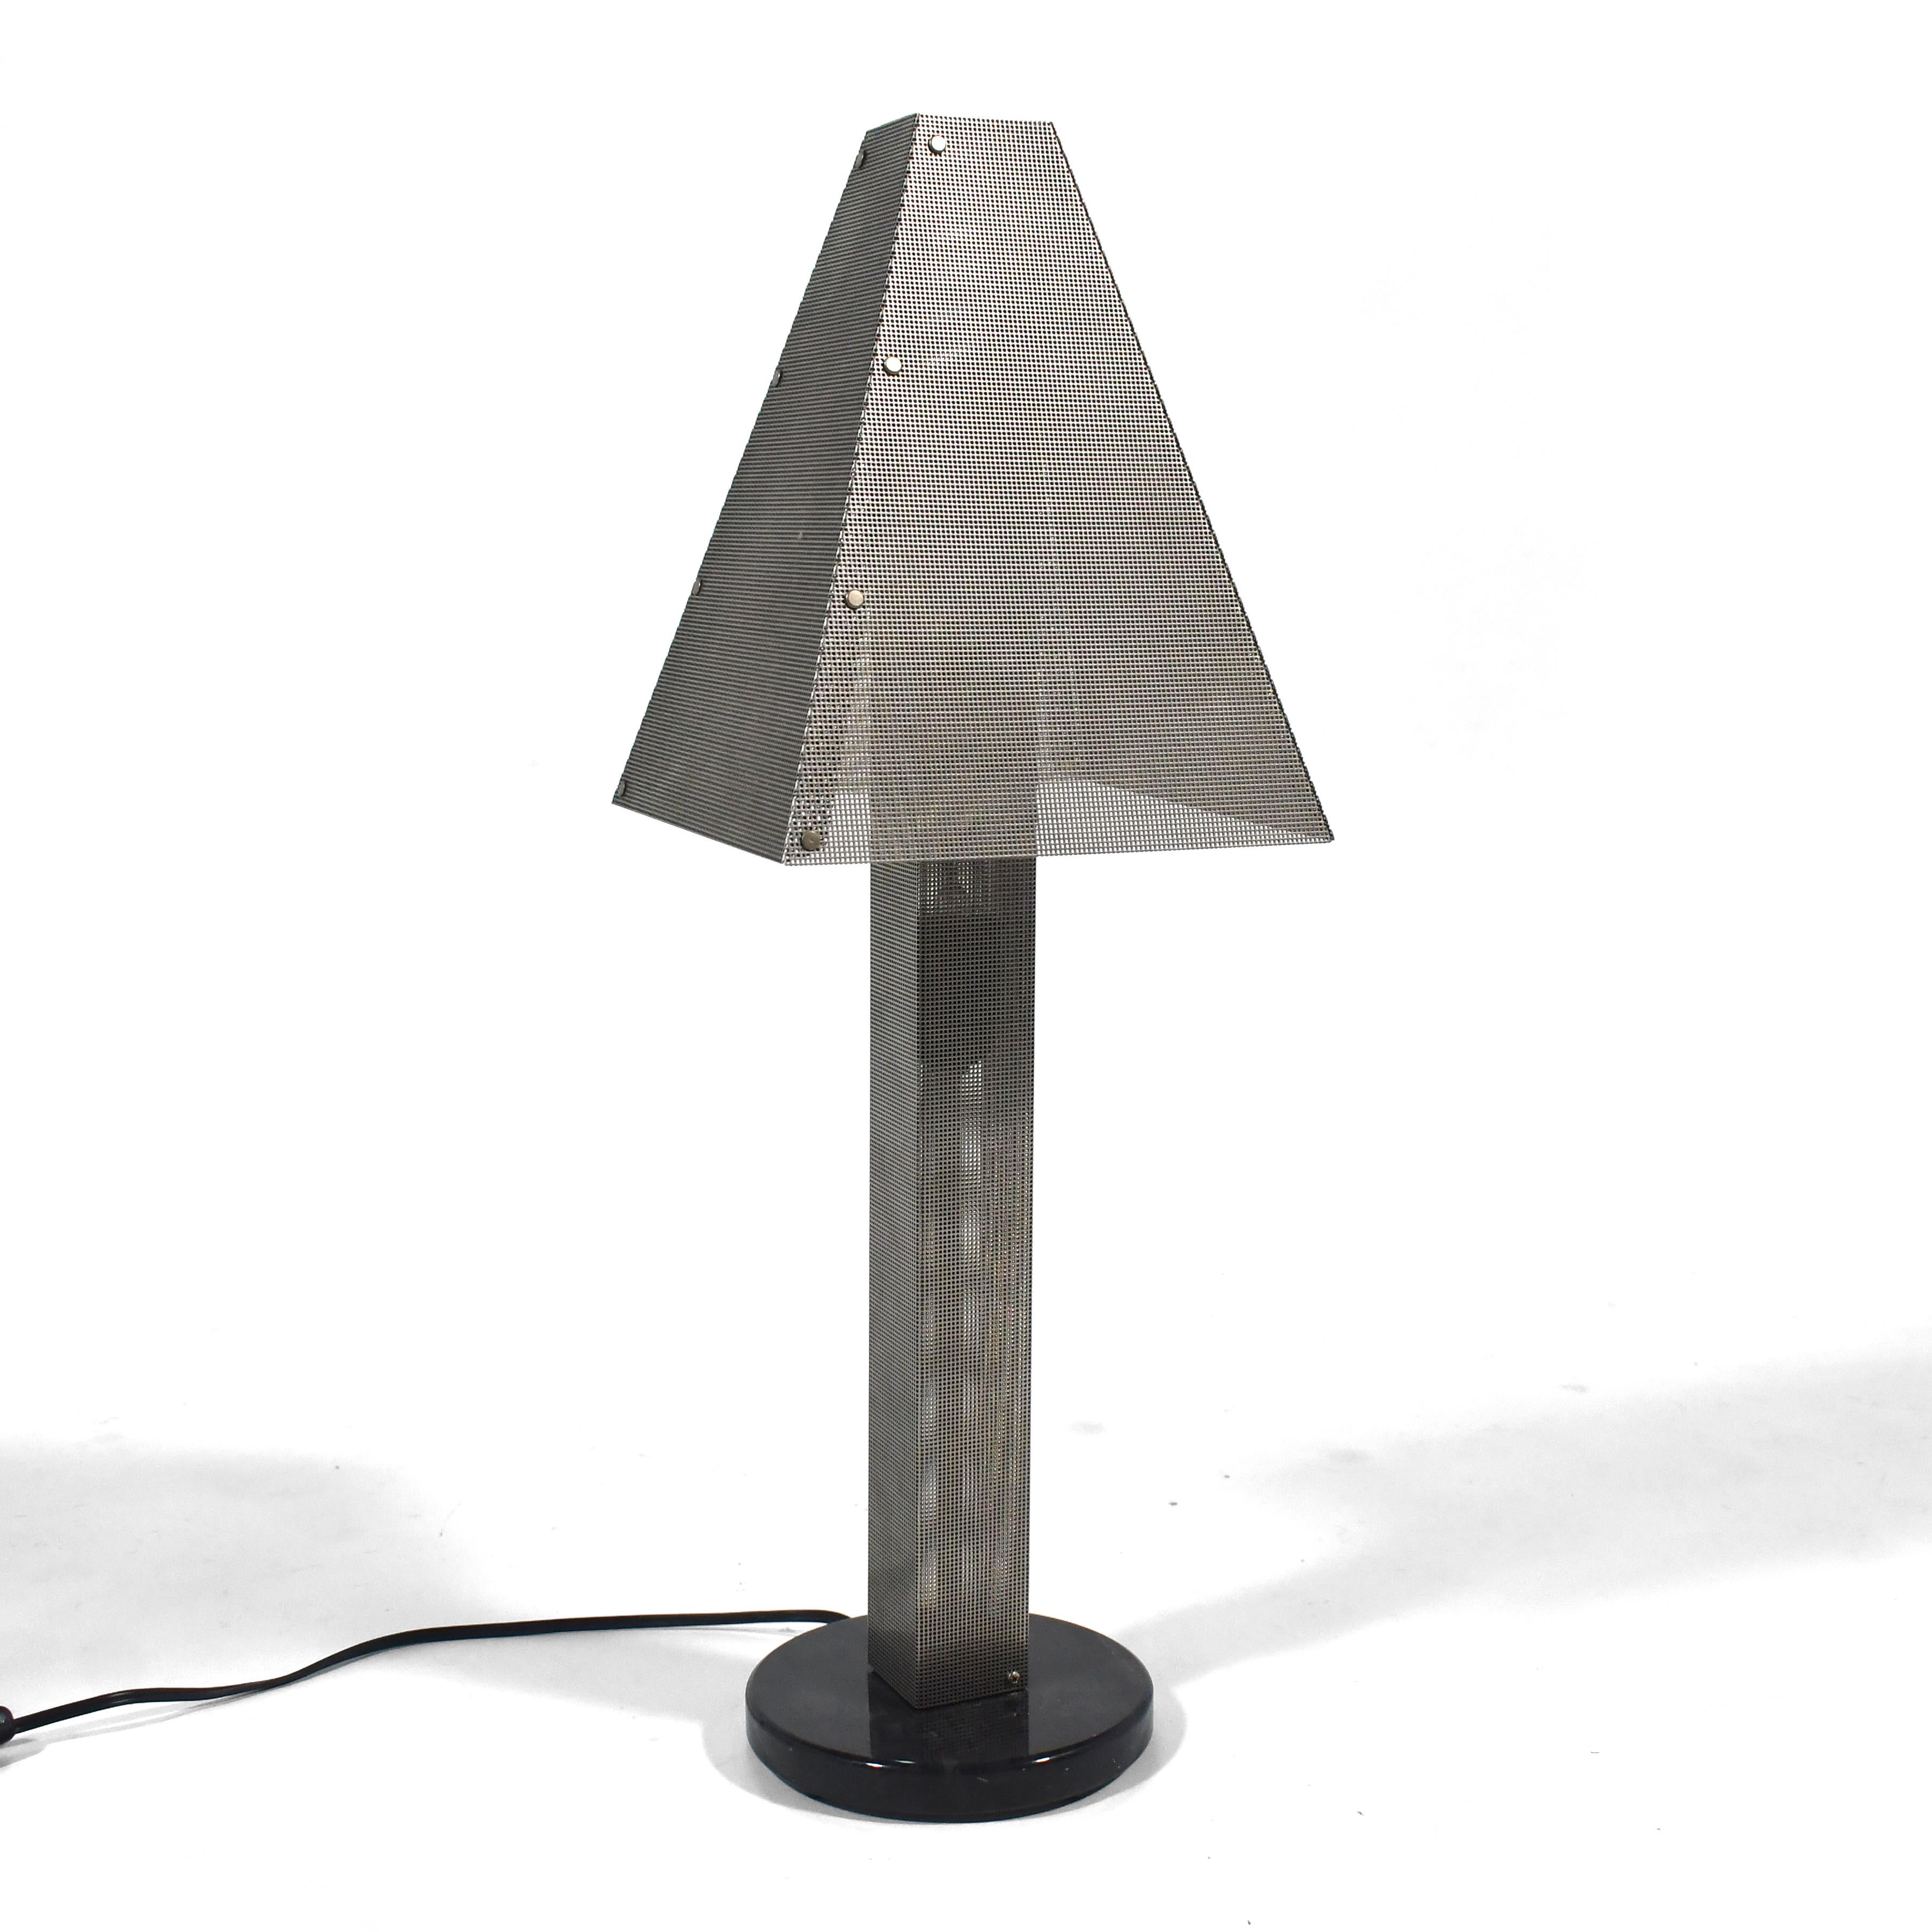 Cet ingénieux design post-moderne de Wendy Stephens utilise de l'acier perforé à la fois pour la lampe et pour l'abat-jour. Une ampoule à l'intérieur du corps l'éclaire de l'intérieur tandis que la base en marbre noir le maintient stable.

23.25 